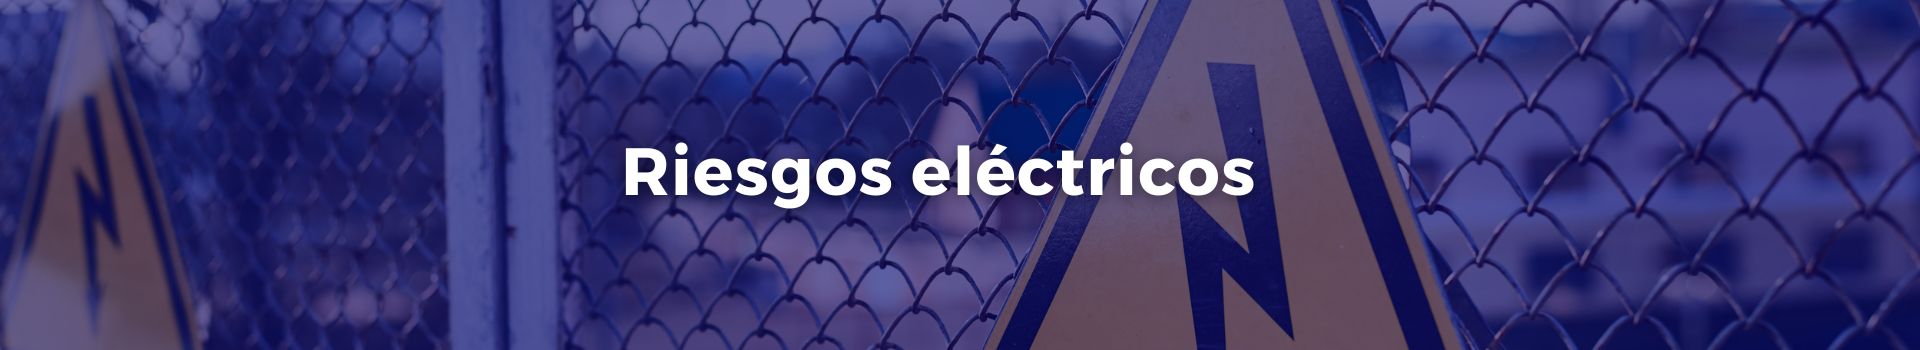 riesgos-electricos-vilma-chinchilla-valderrama-veinticuatro-banner